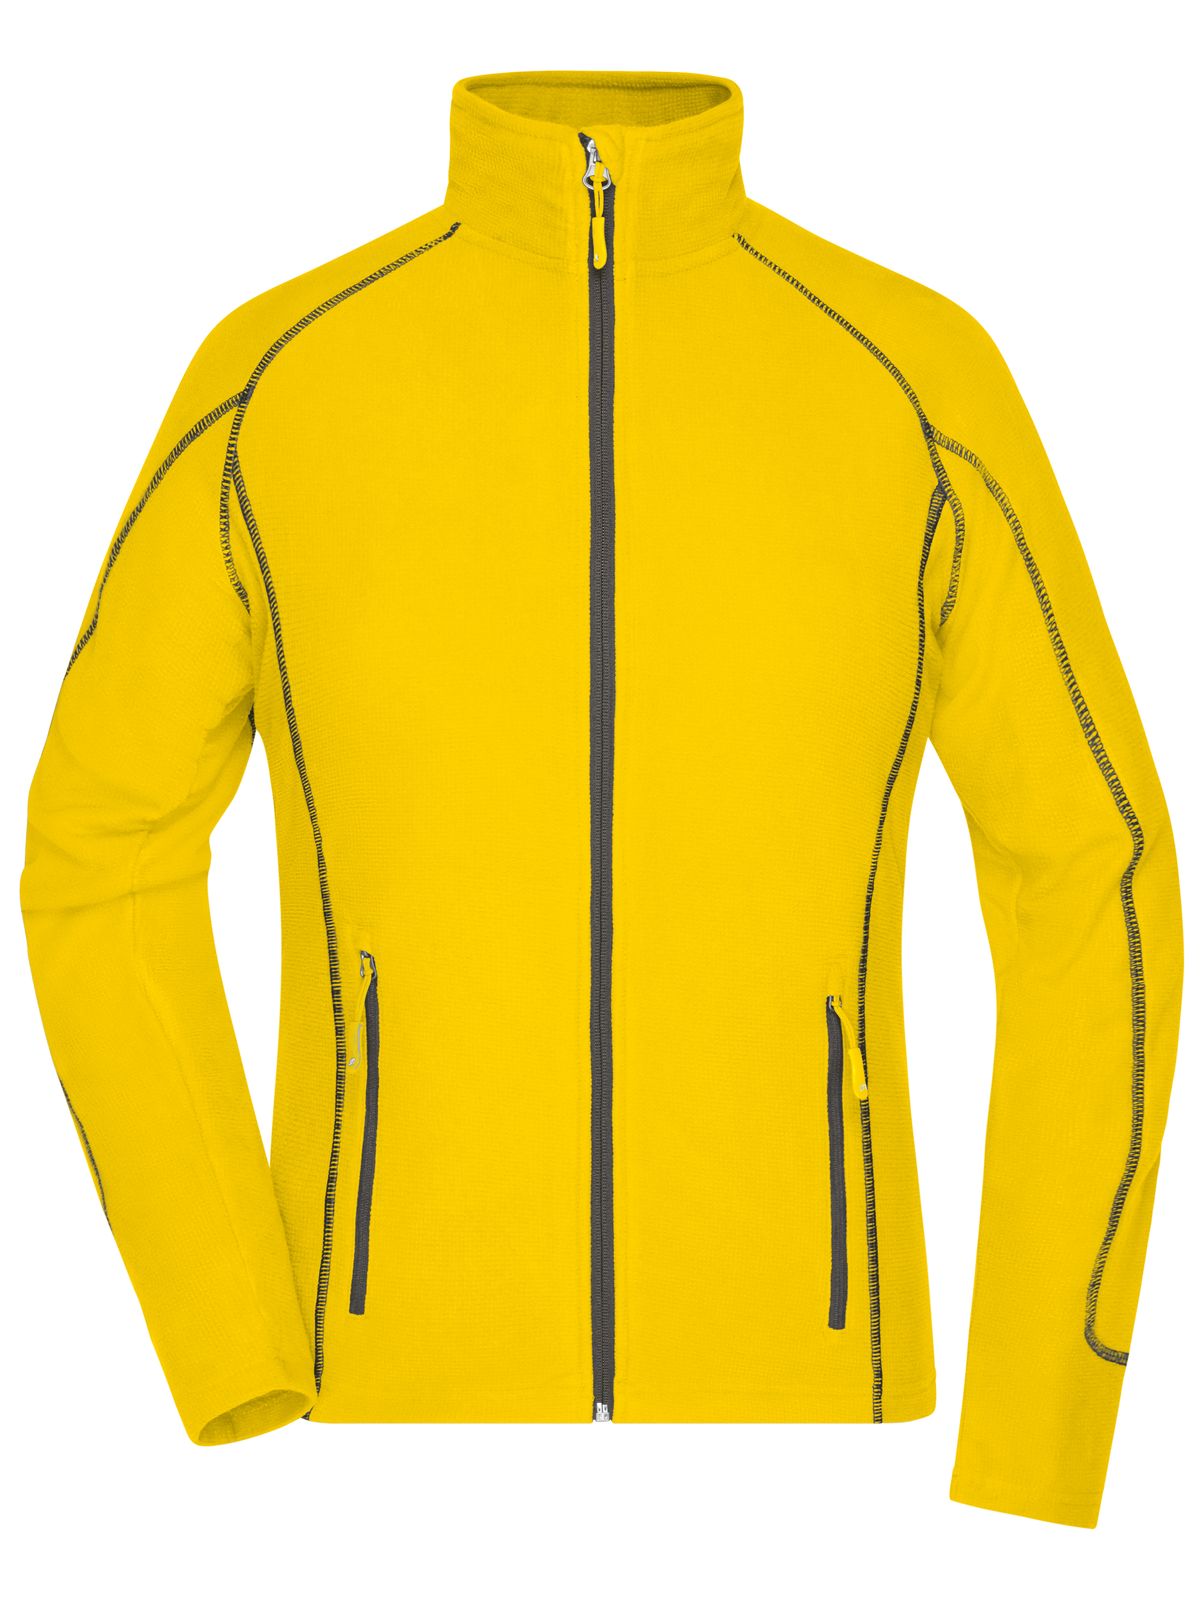 ladies-structure-fleece-jacket-yellow-carbon.webp